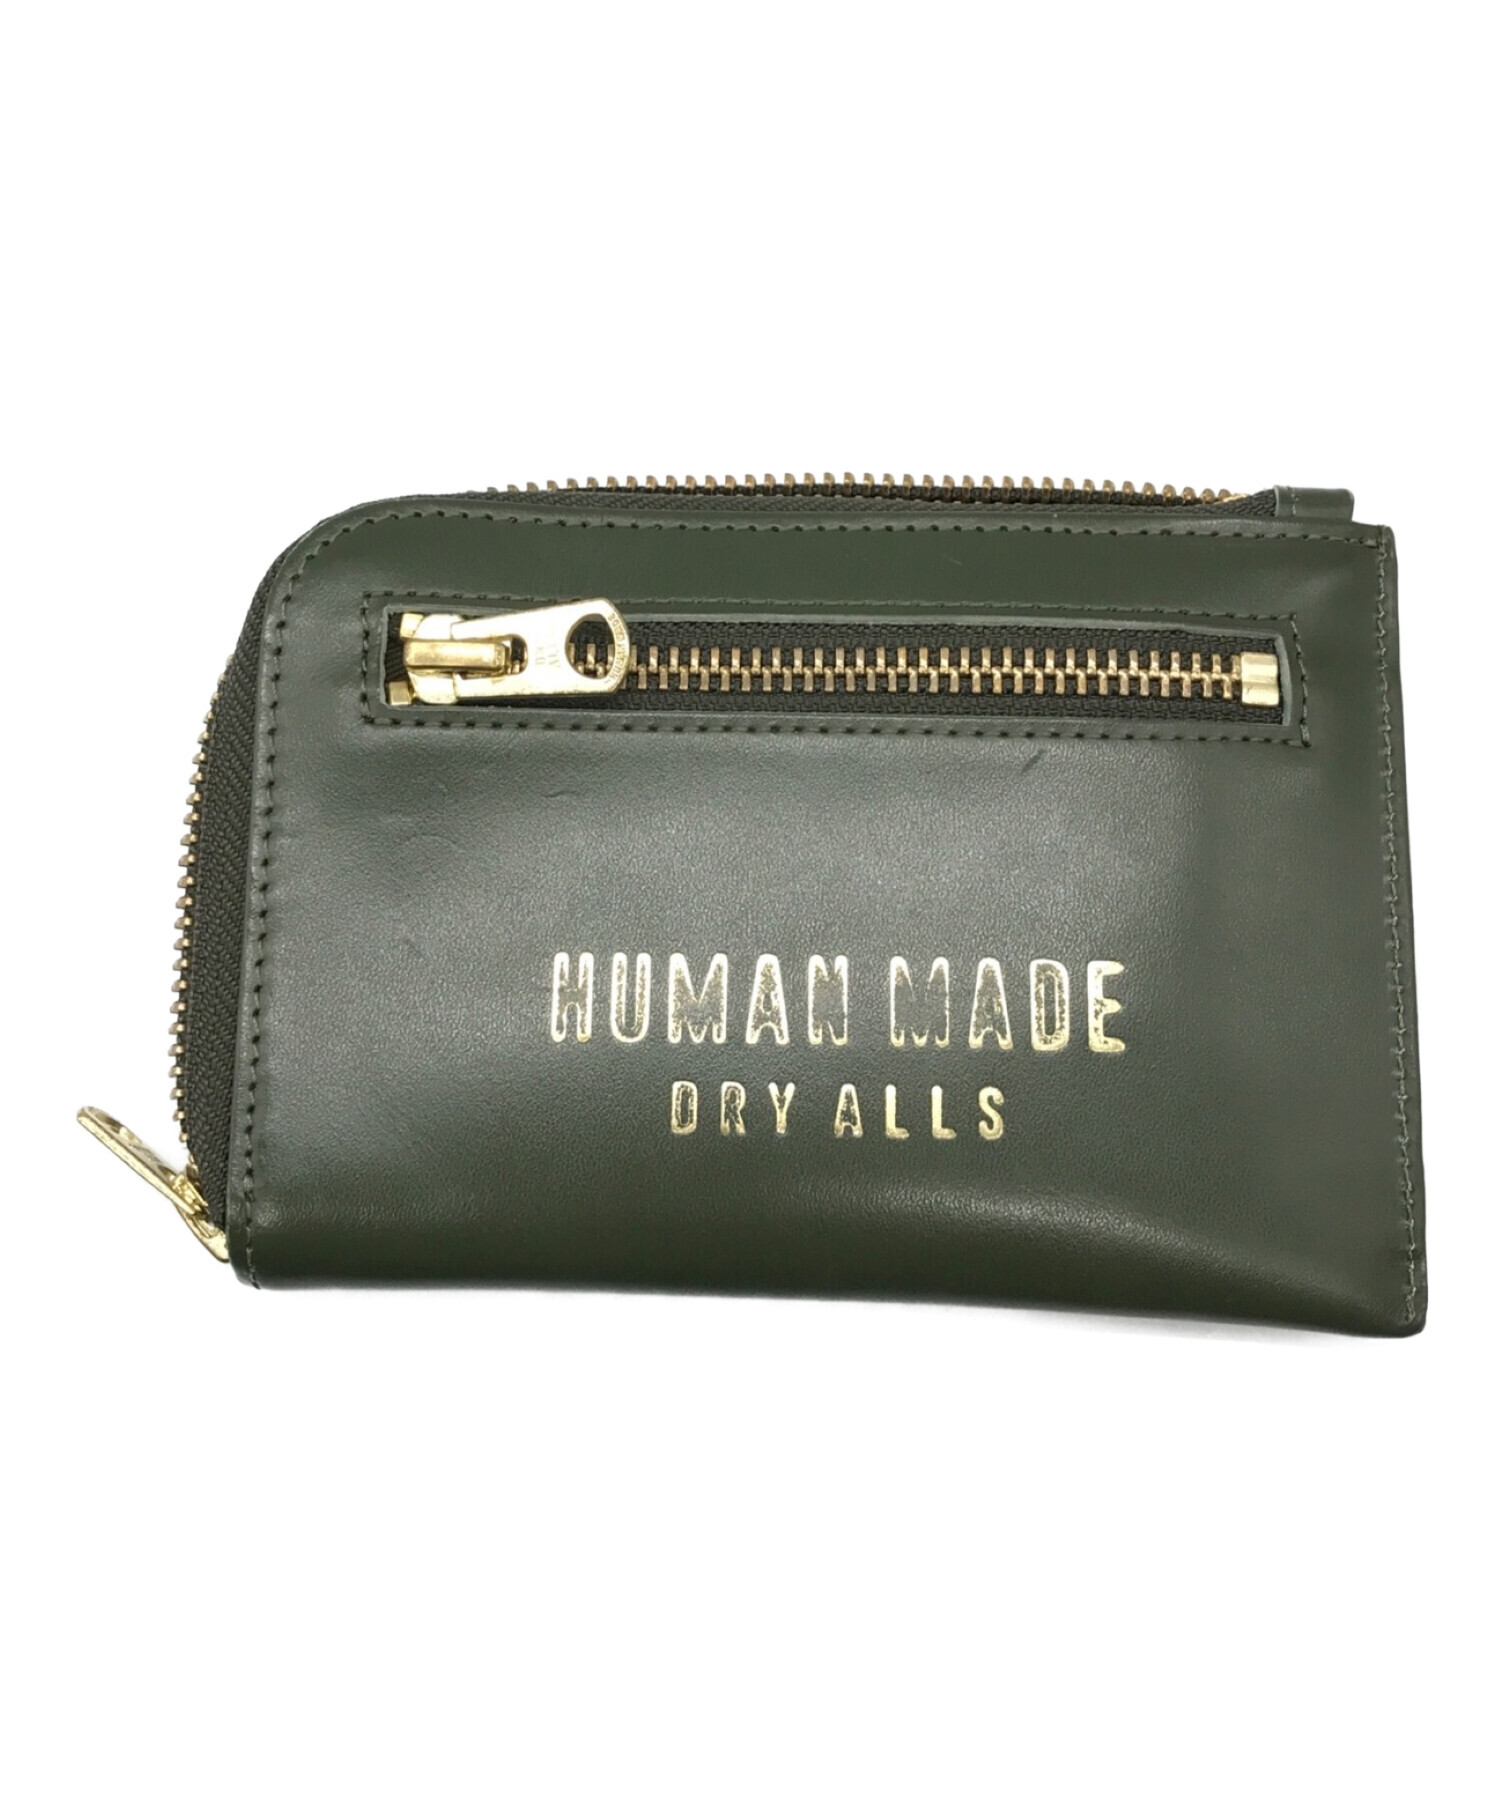 HUMAN MADE (ヒューマンメイド) leather wallet オリーブ サイズ:下記参照